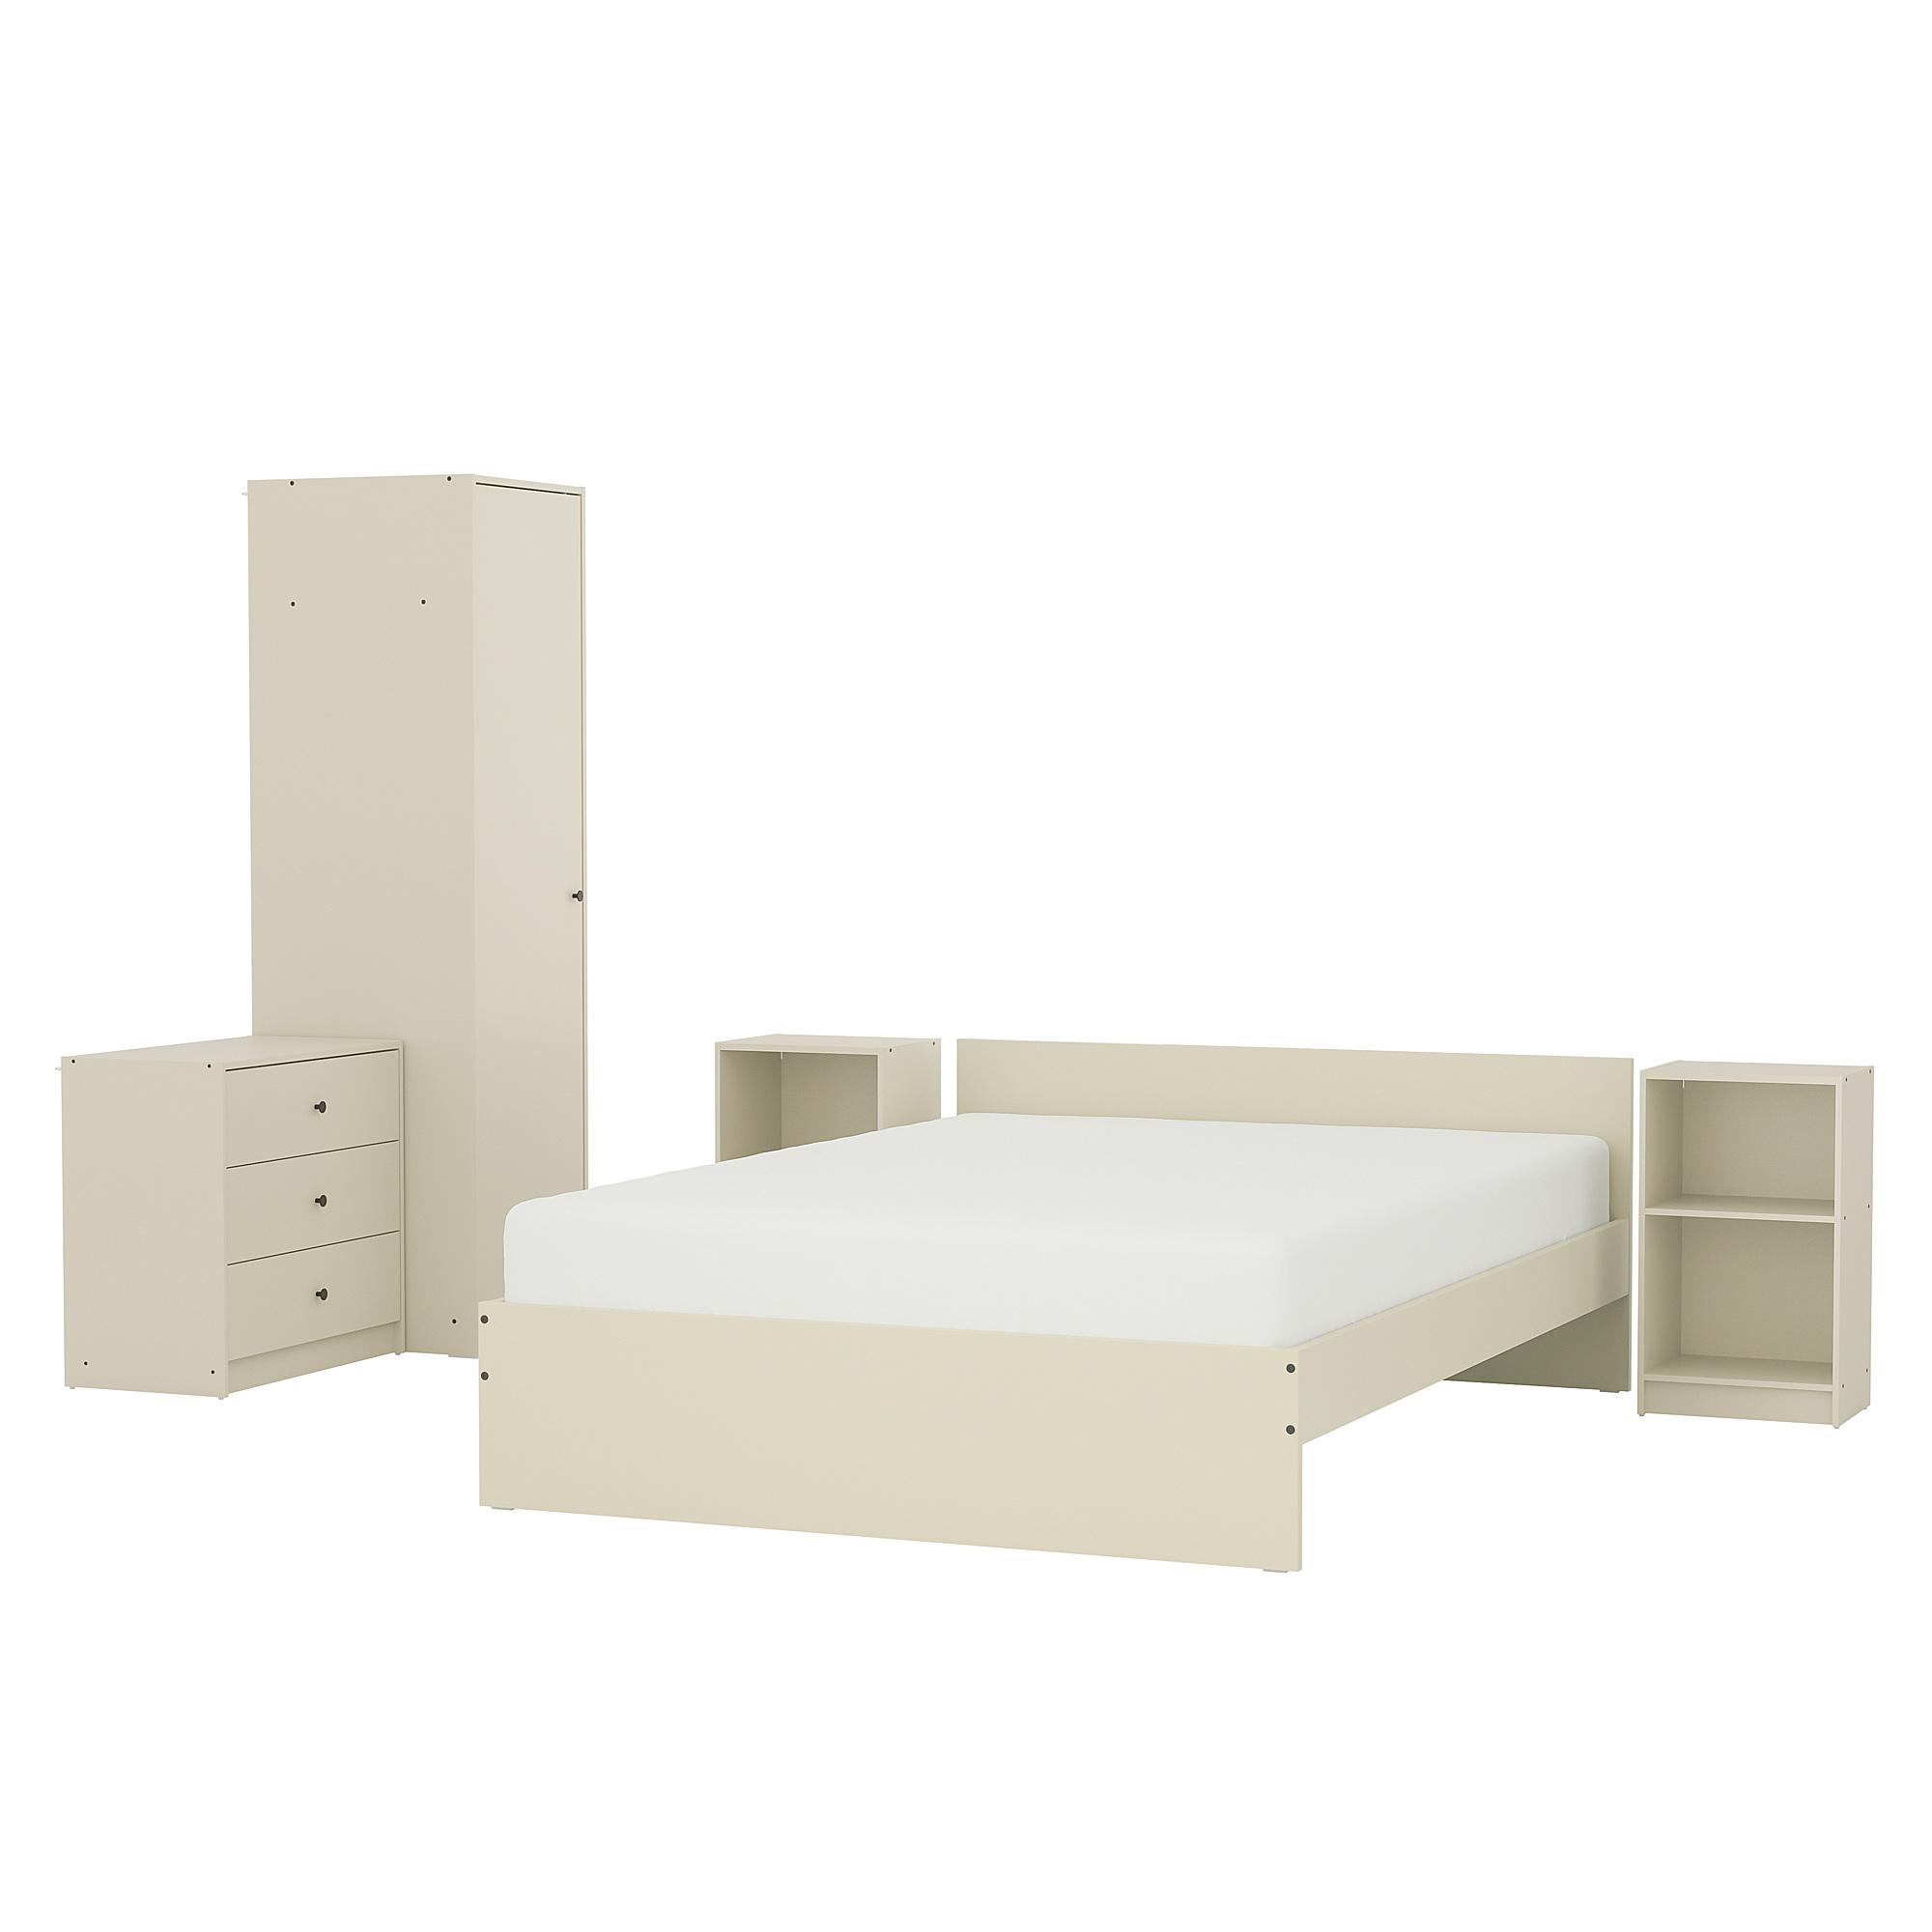 GURSKEN bedroom furniture, set of 5